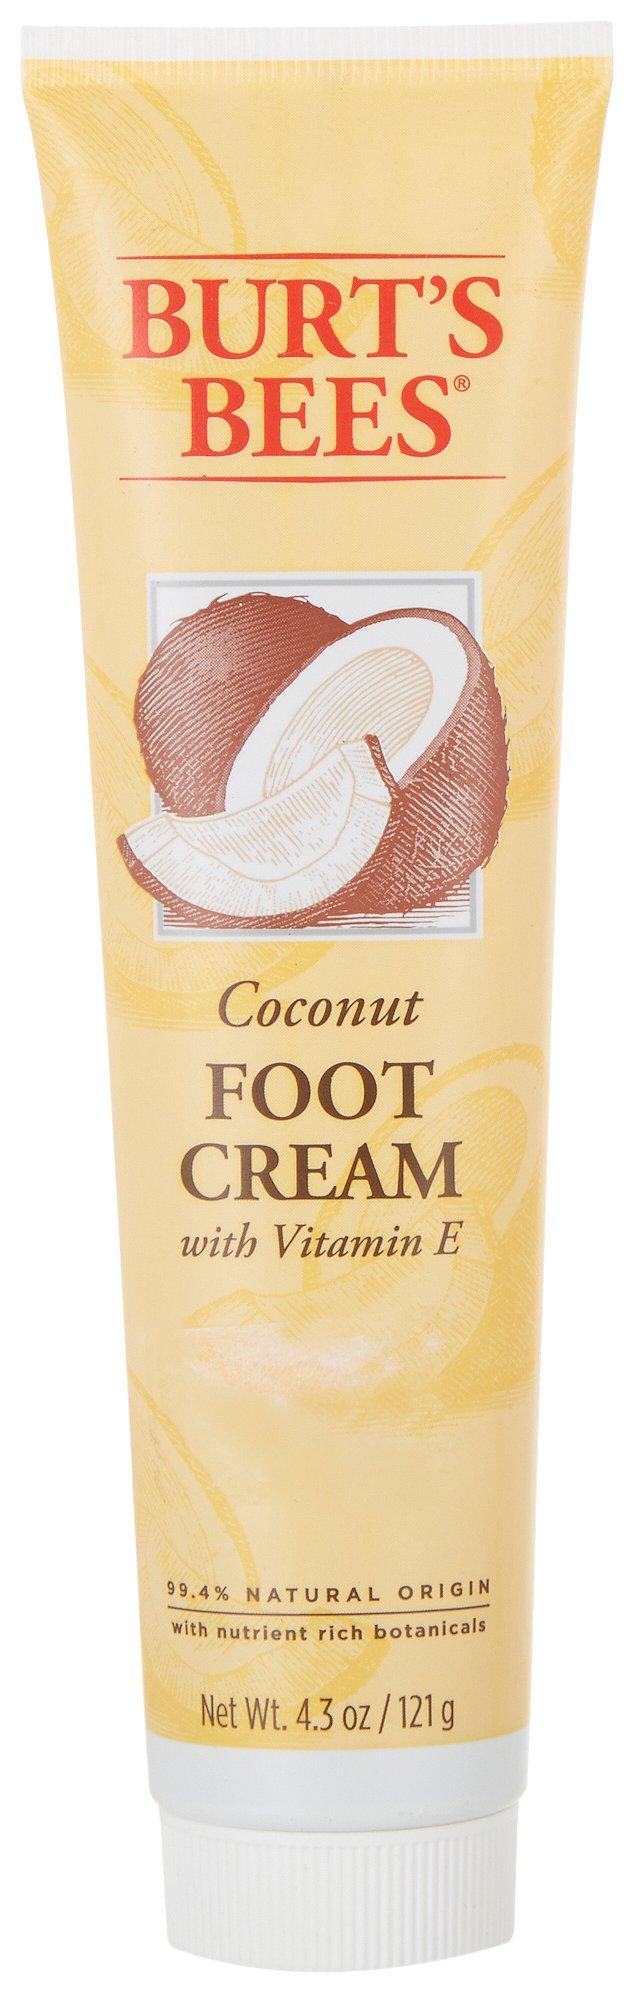 Coconut Foot Cream With Vitamin E 4.3 oz.